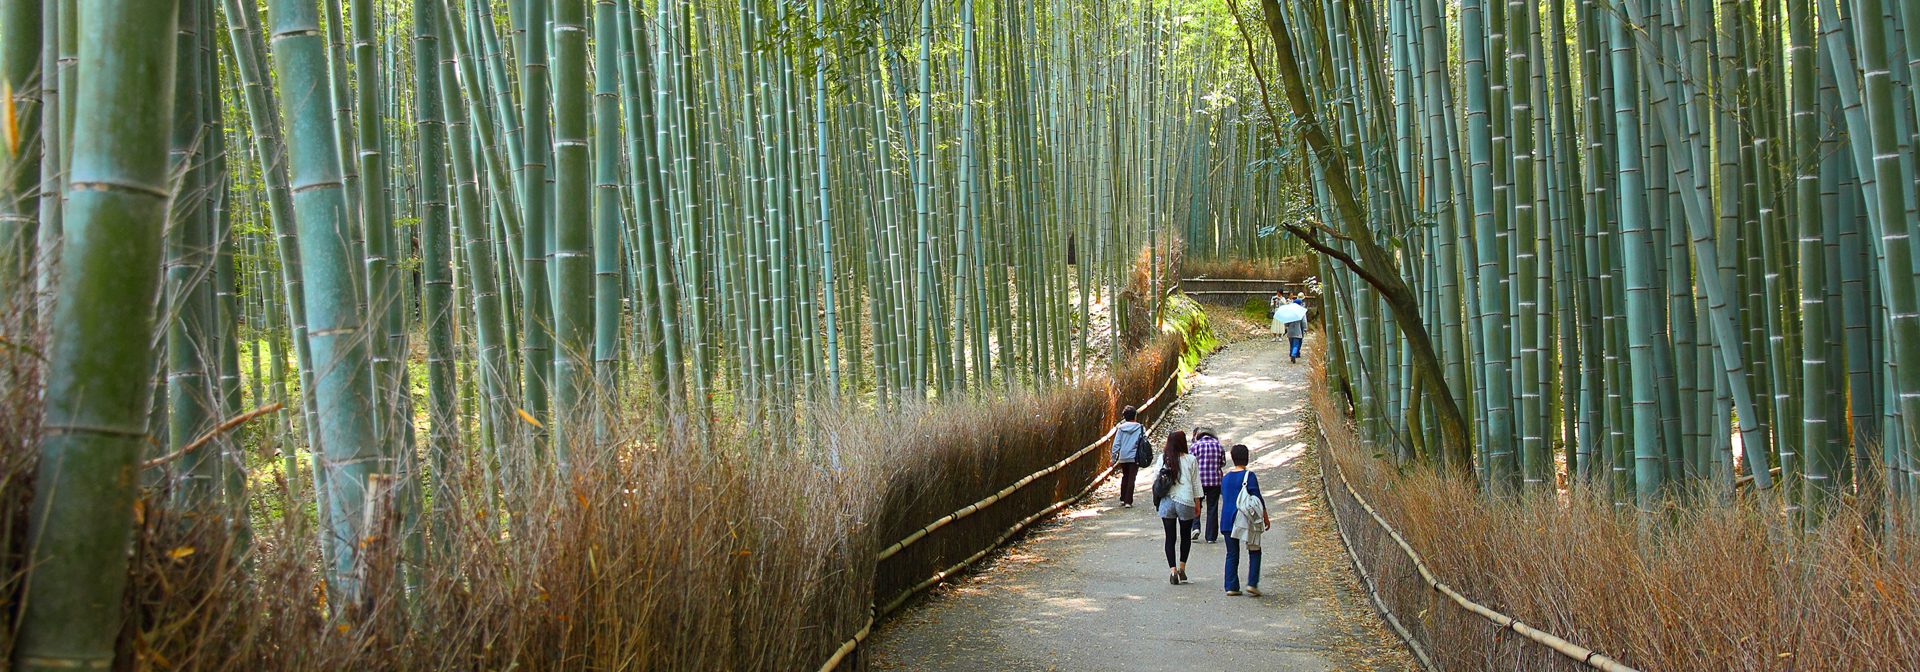 japan - kyoto_arashiyama_bambus skov_02